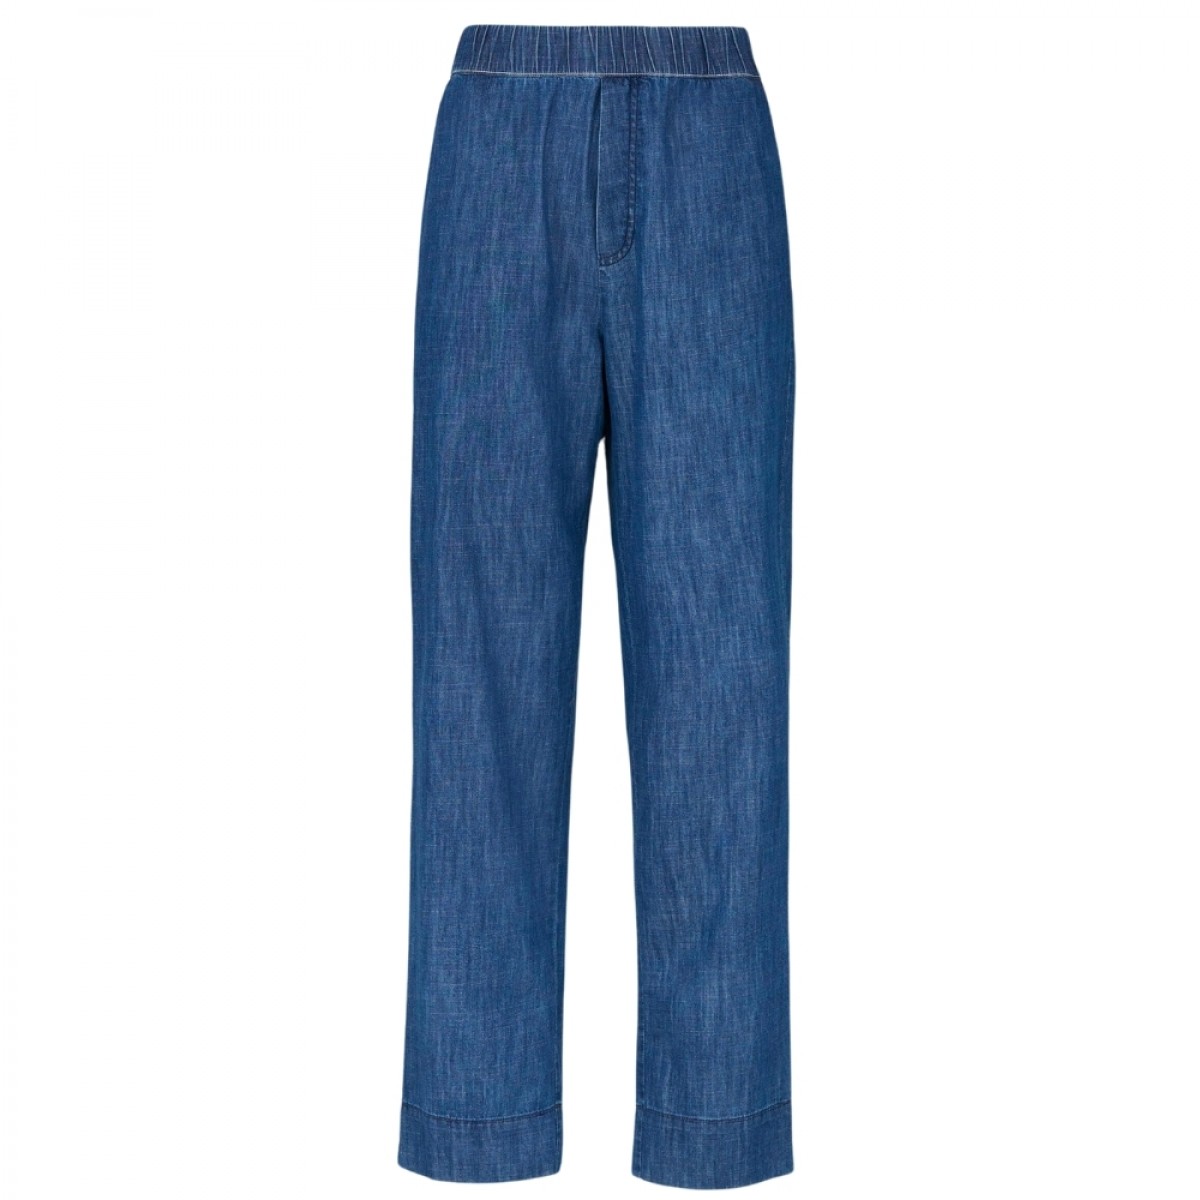 miles pant denim - blue jeans - front